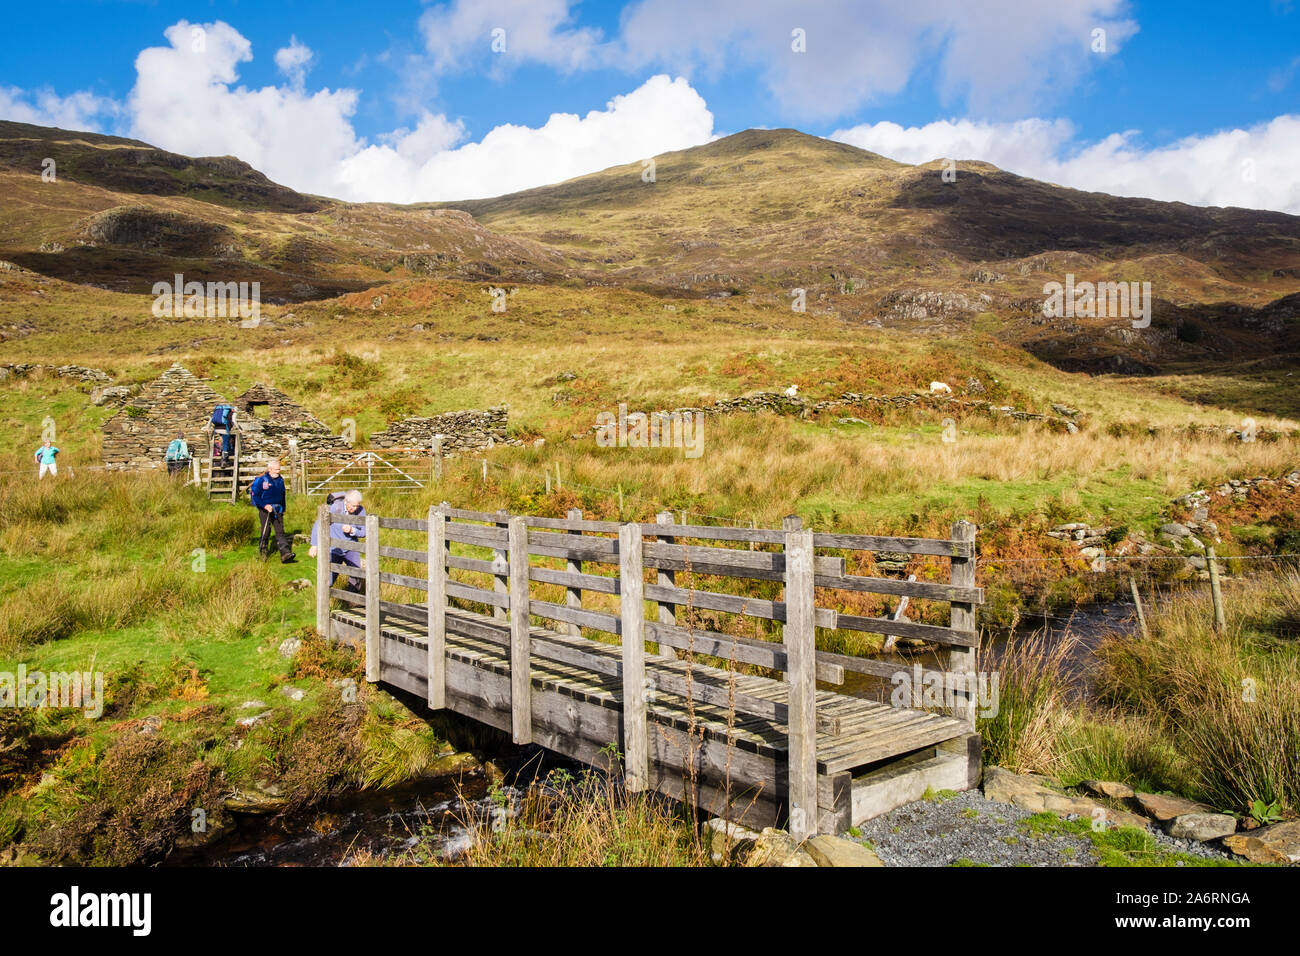 Une passerelle d'eau de montagne avec les randonneurs randonnée sur chemin sous Yr Aran dans le parc national de Snowdonia. , Beddgelert Gwynedd, au nord du Pays de Galles, Royaume-Uni, Angleterre Banque D'Images